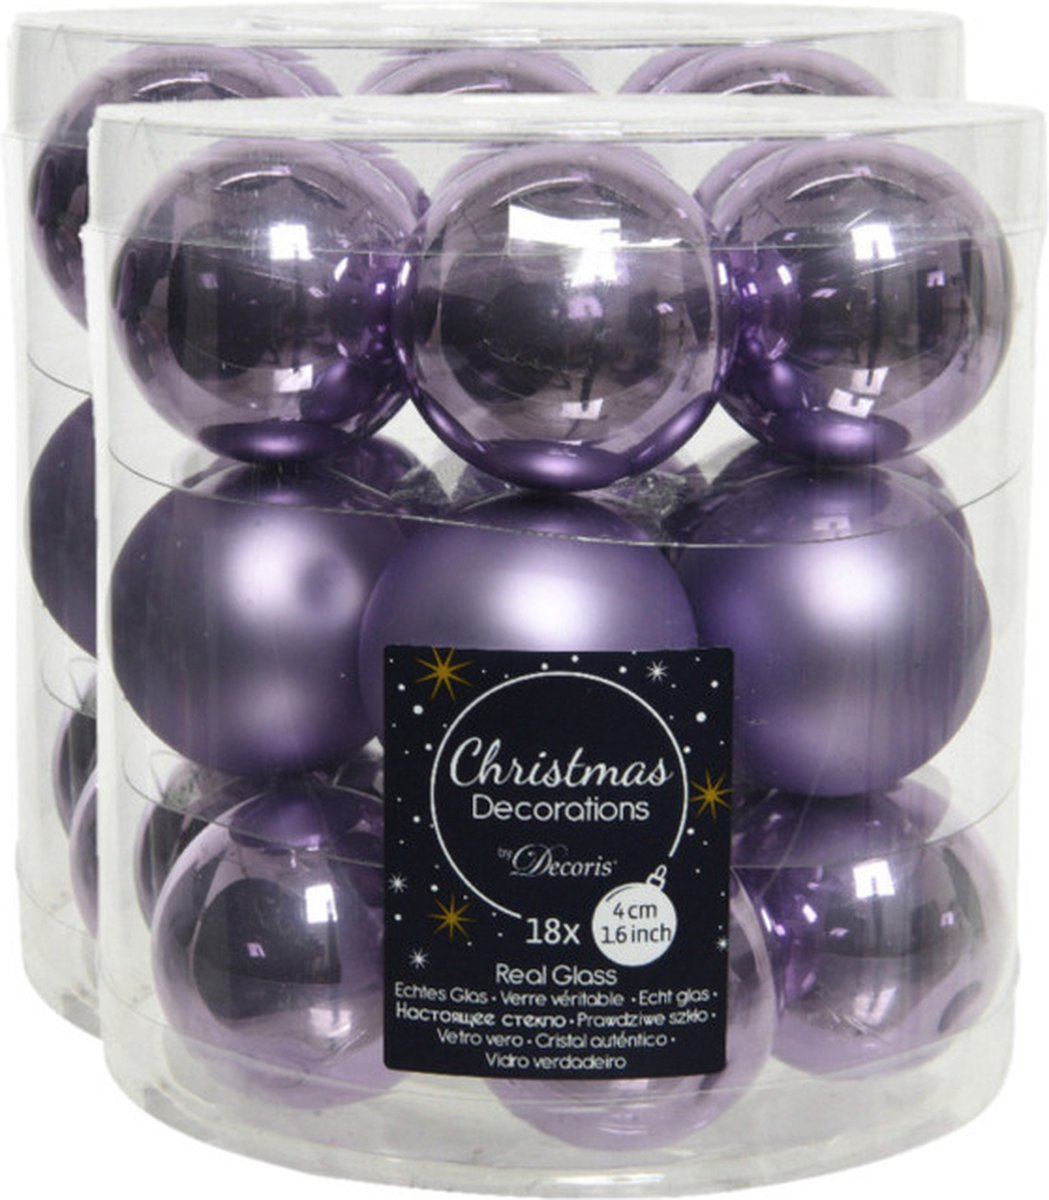 54x stuks kleine kerstballen heide lila paars van glas 4 cm - mat/glans - Kerstboomversiering